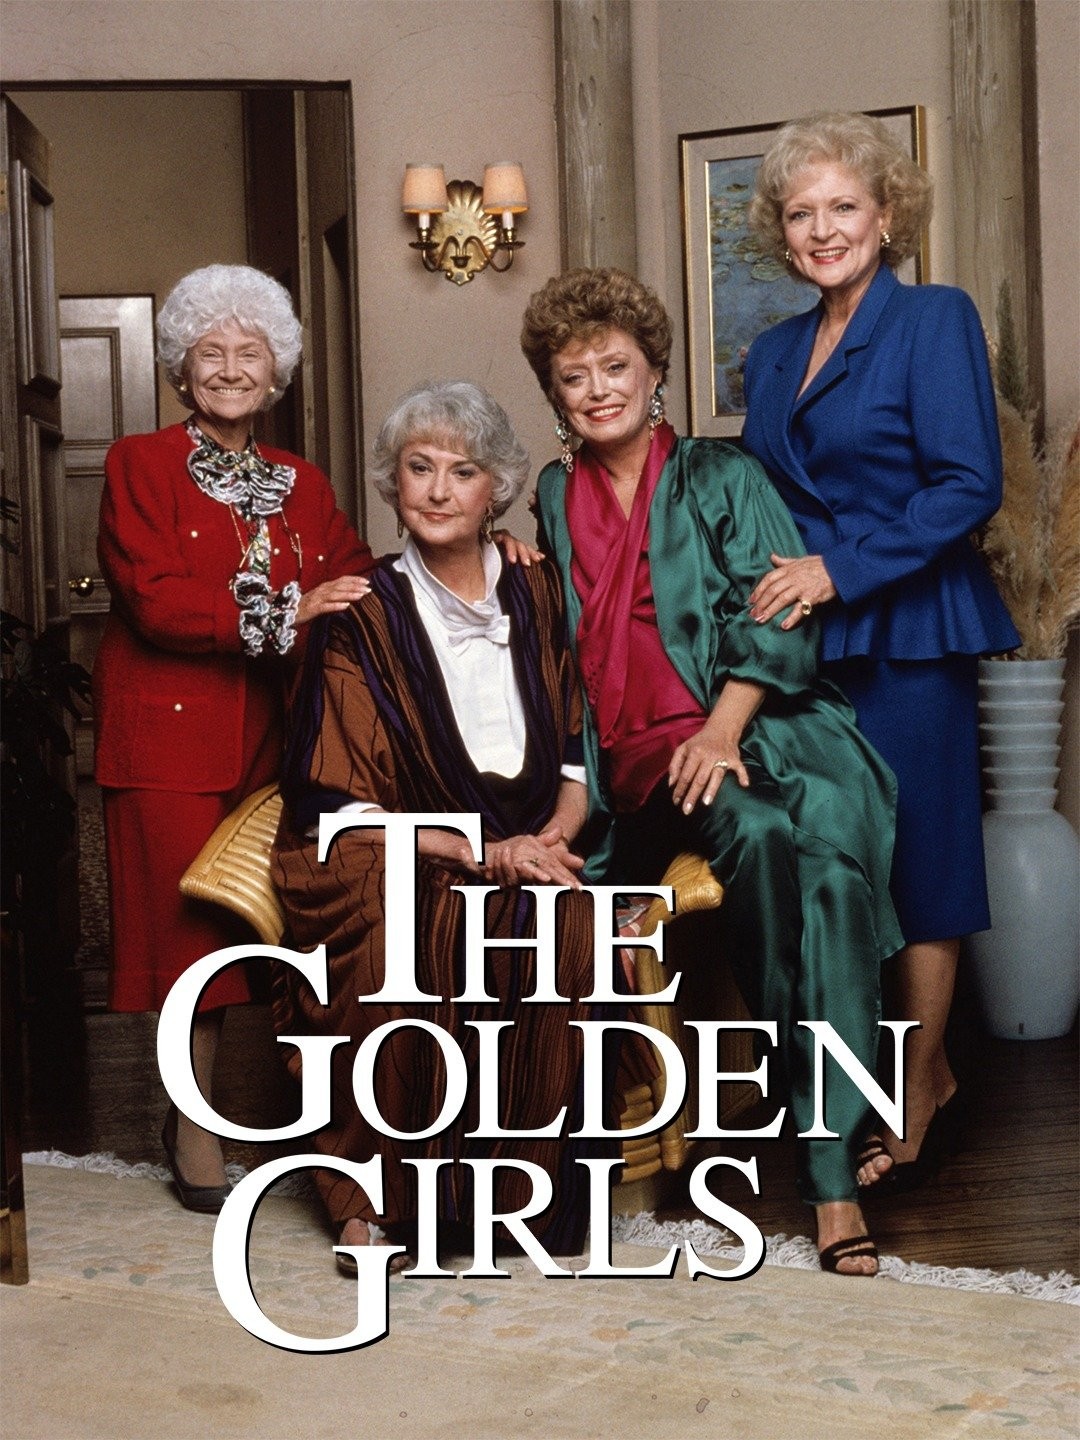 Watch 'Golden Girls' Free: Season 7 and Older Episodes